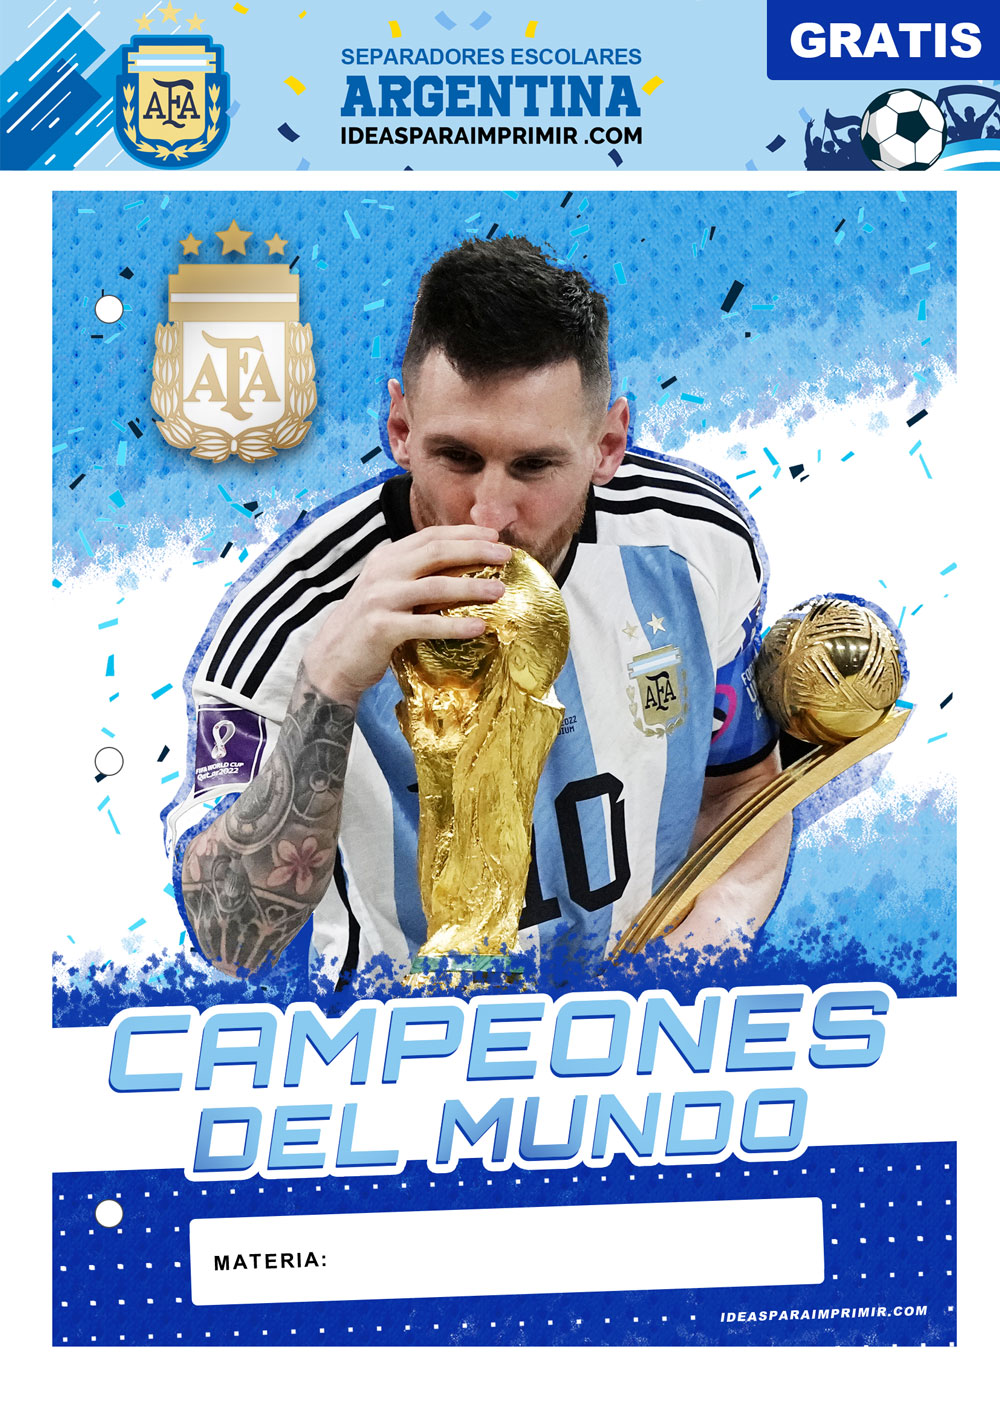 Separador de Materias de Argentina y Messi